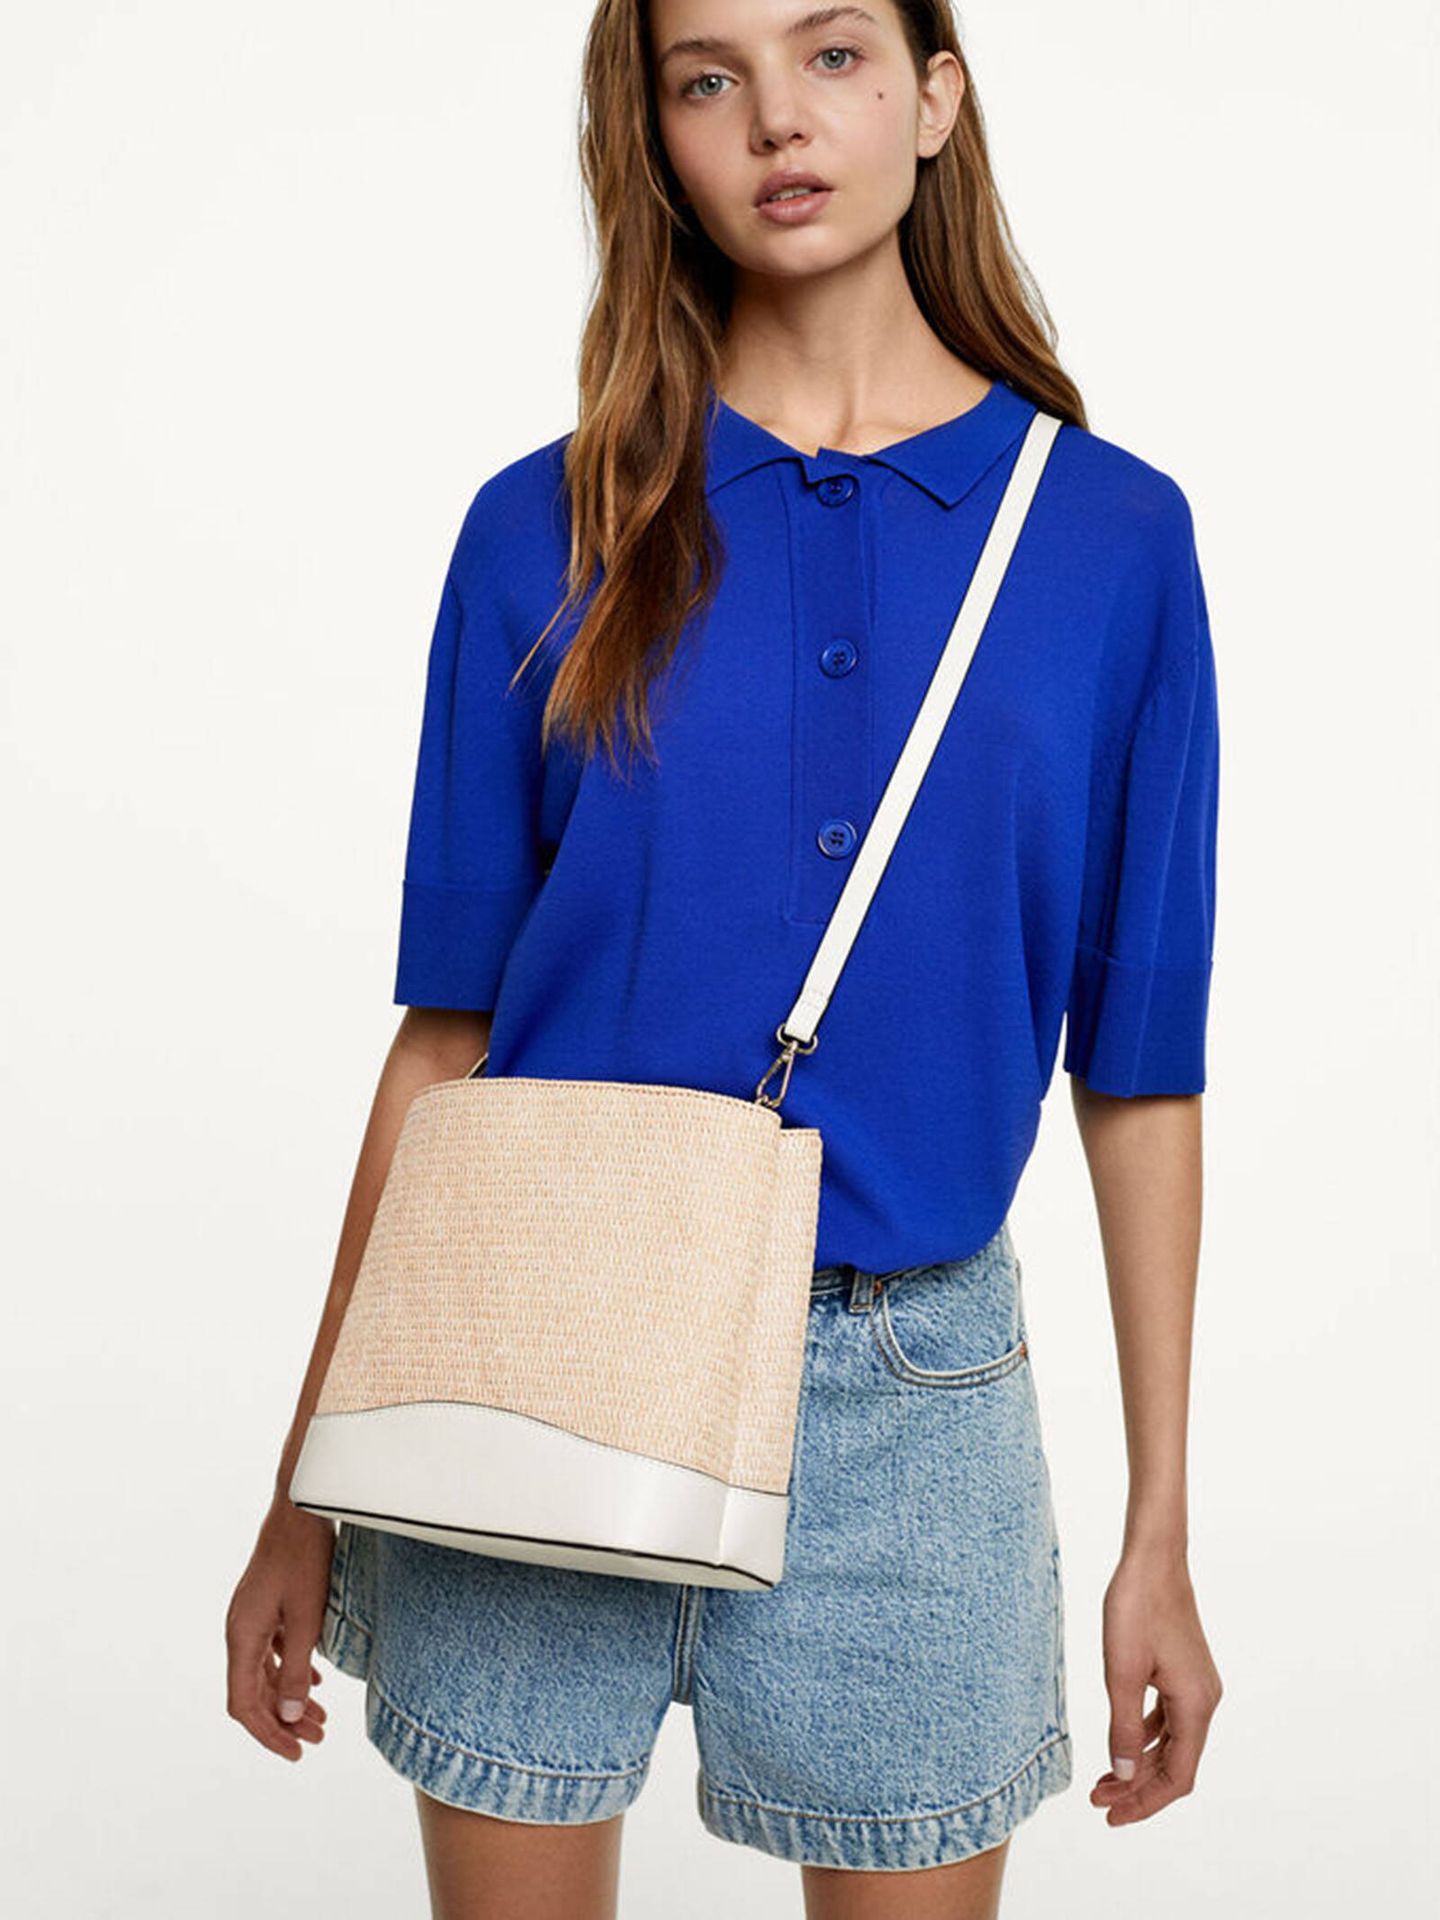 Este bolso es todo lo que necesitas para tus looks de primavera/verano. (Parfois/Cortesía)